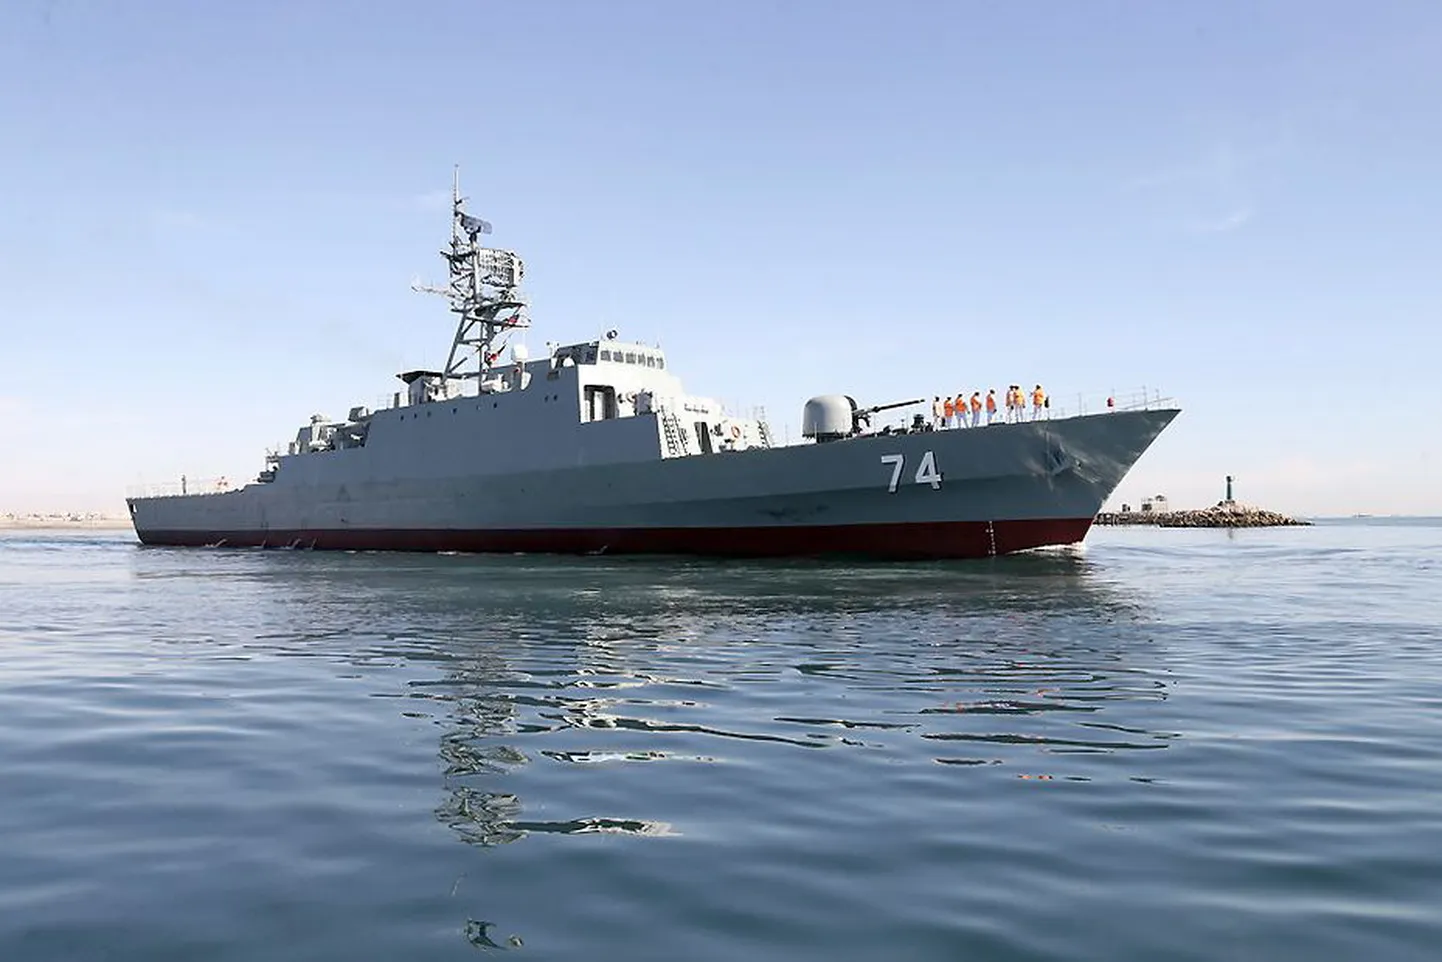 Iraani sõjalaev Sahand